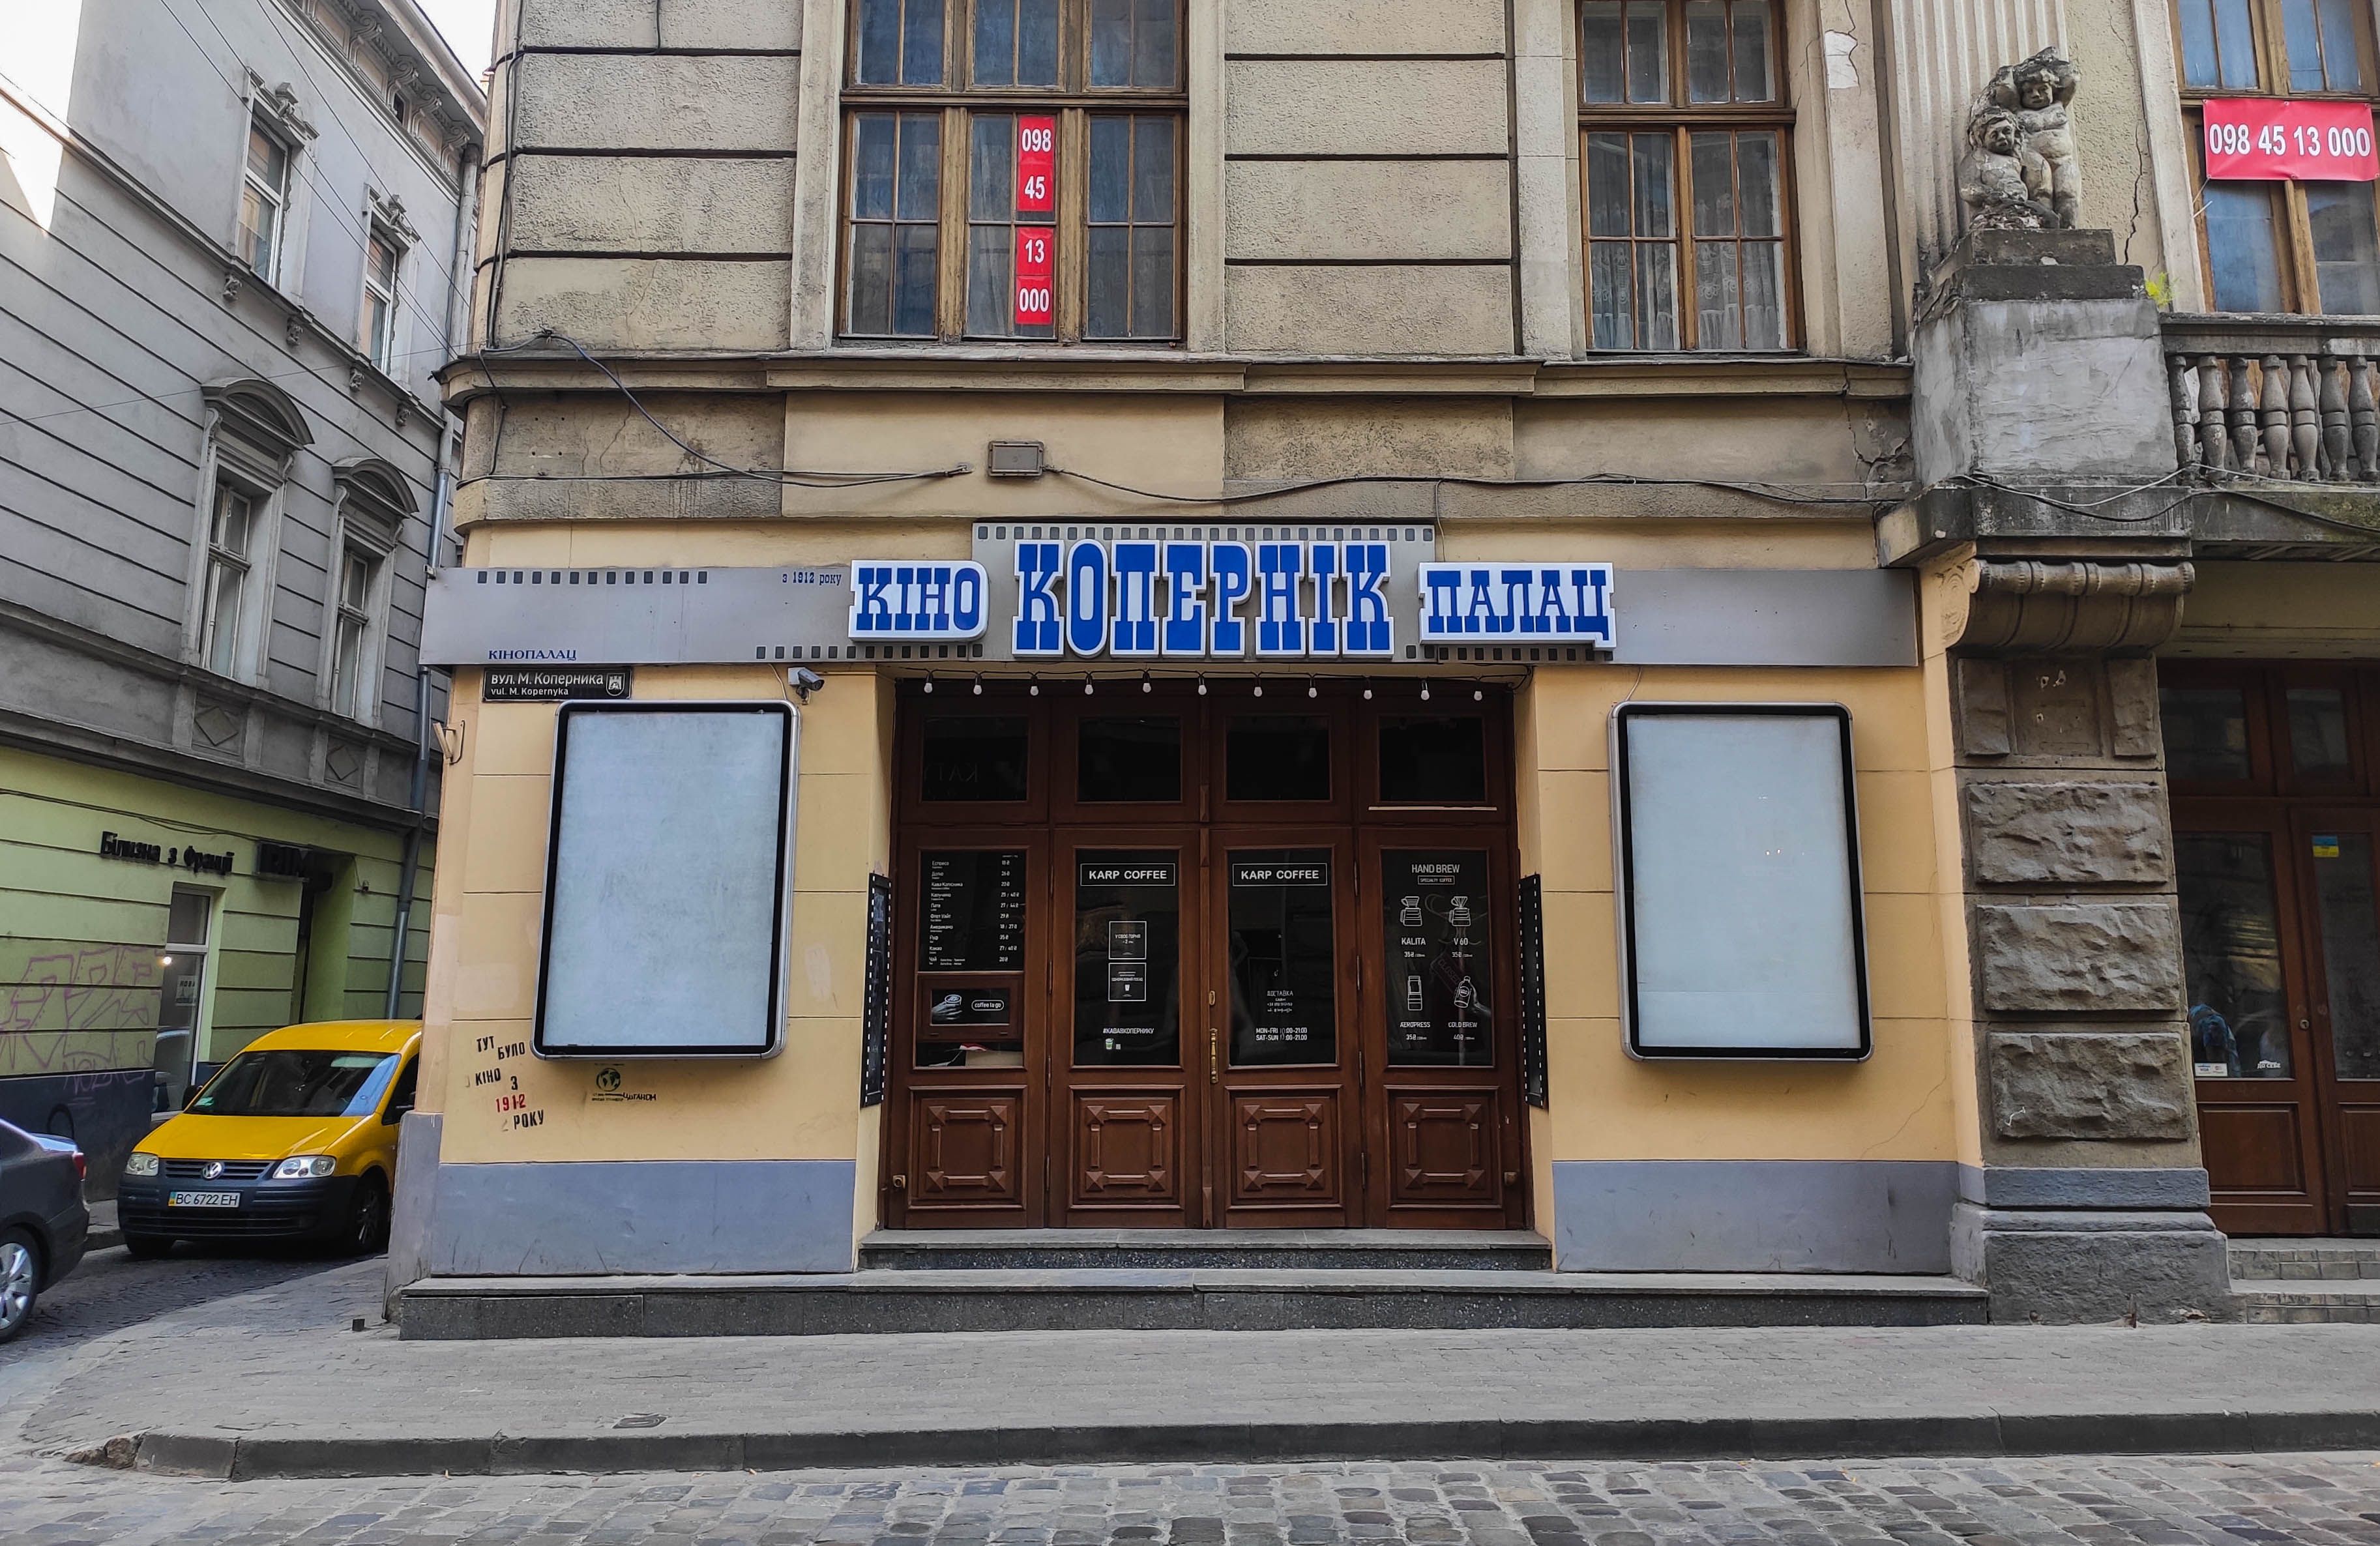 Кінопалац Коперник у Львові не виселять: в мерії розповіли, що зробити, щоб його зберегти